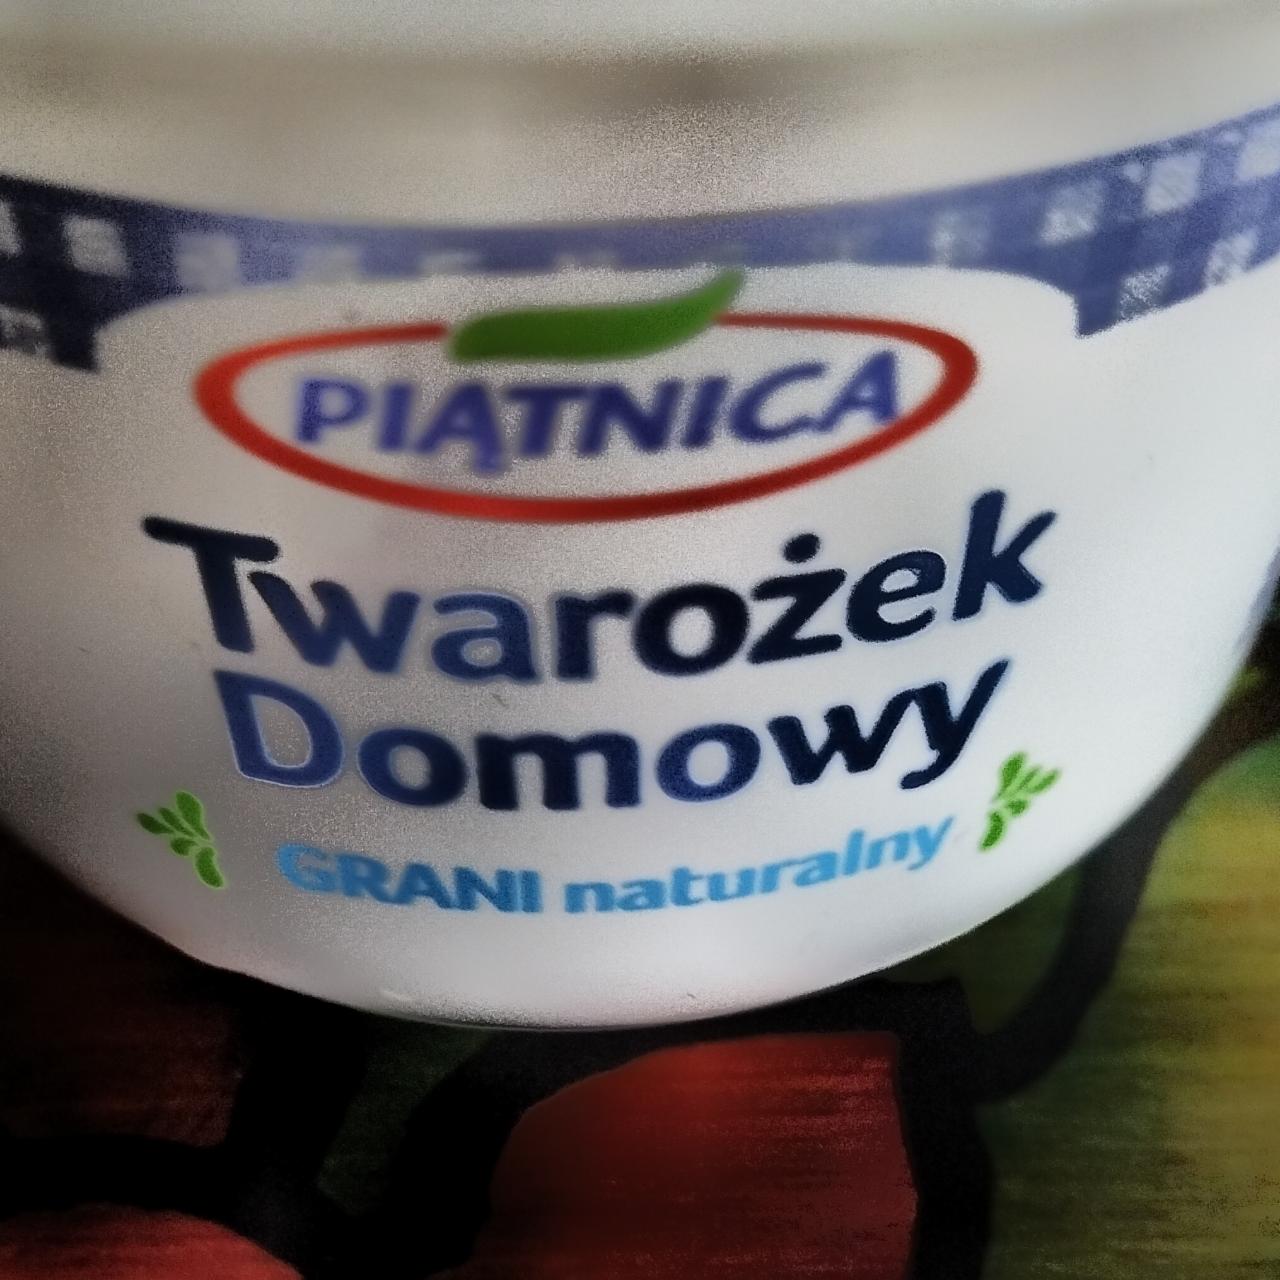 Фото - Сир кисломолочний домашній Twarozek Domowy Piatnica